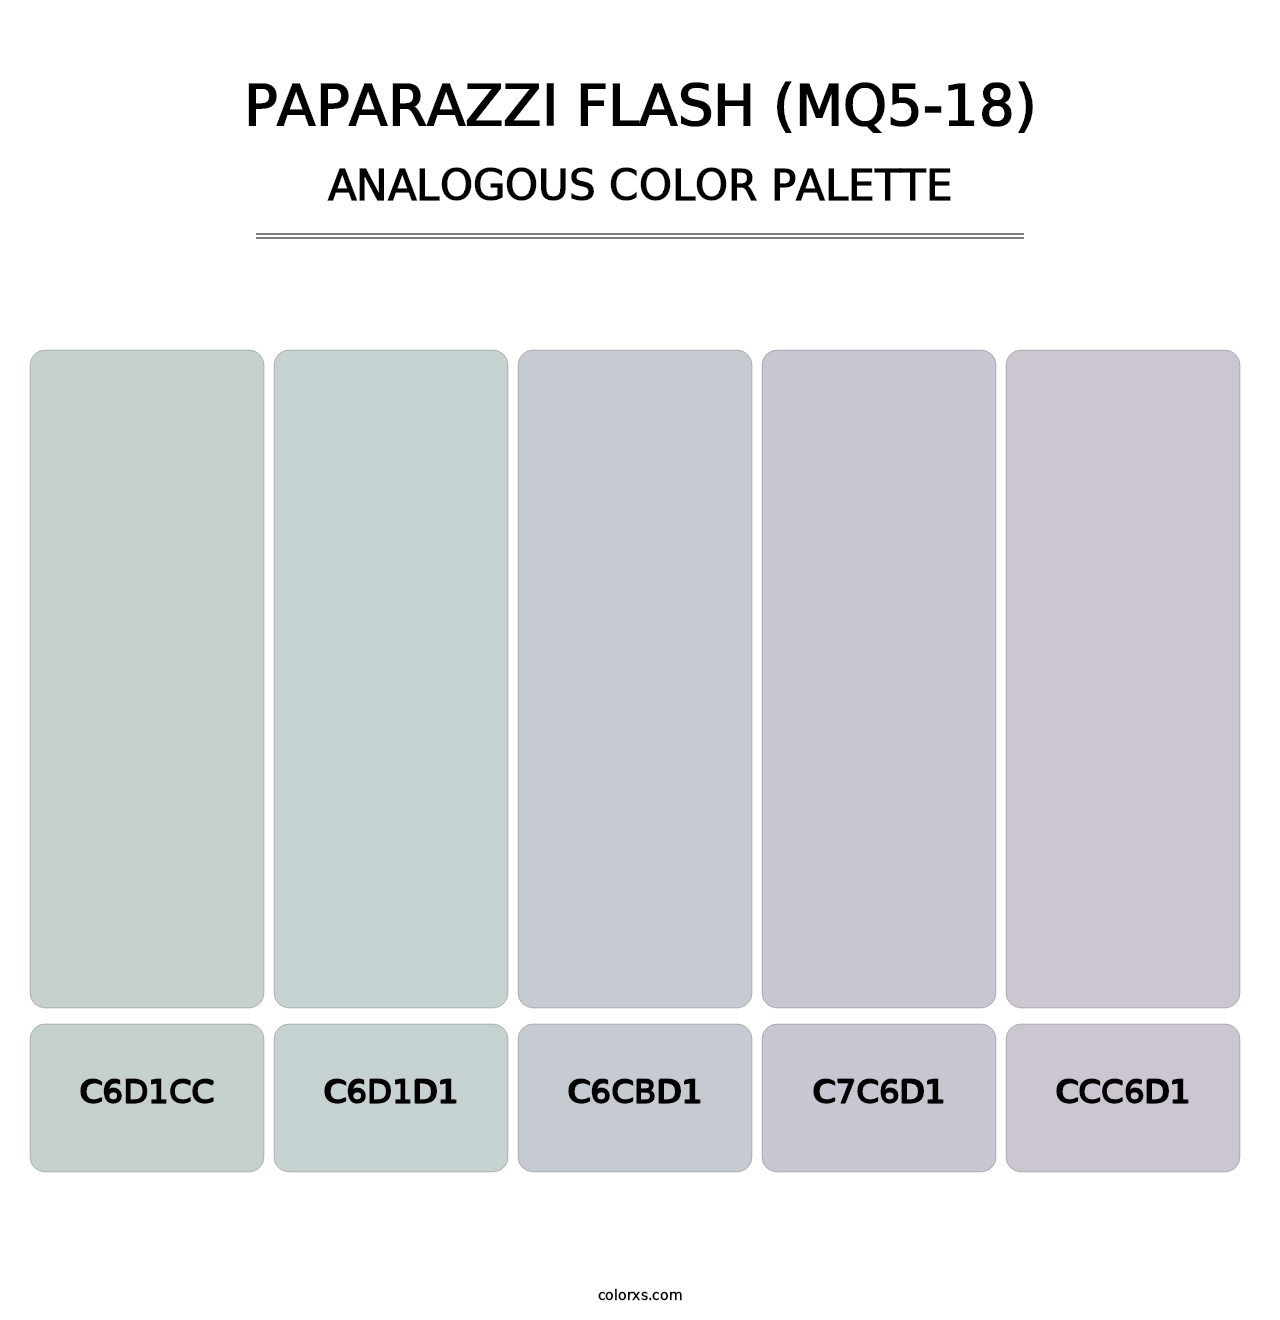 Paparazzi Flash (MQ5-18) - Analogous Color Palette